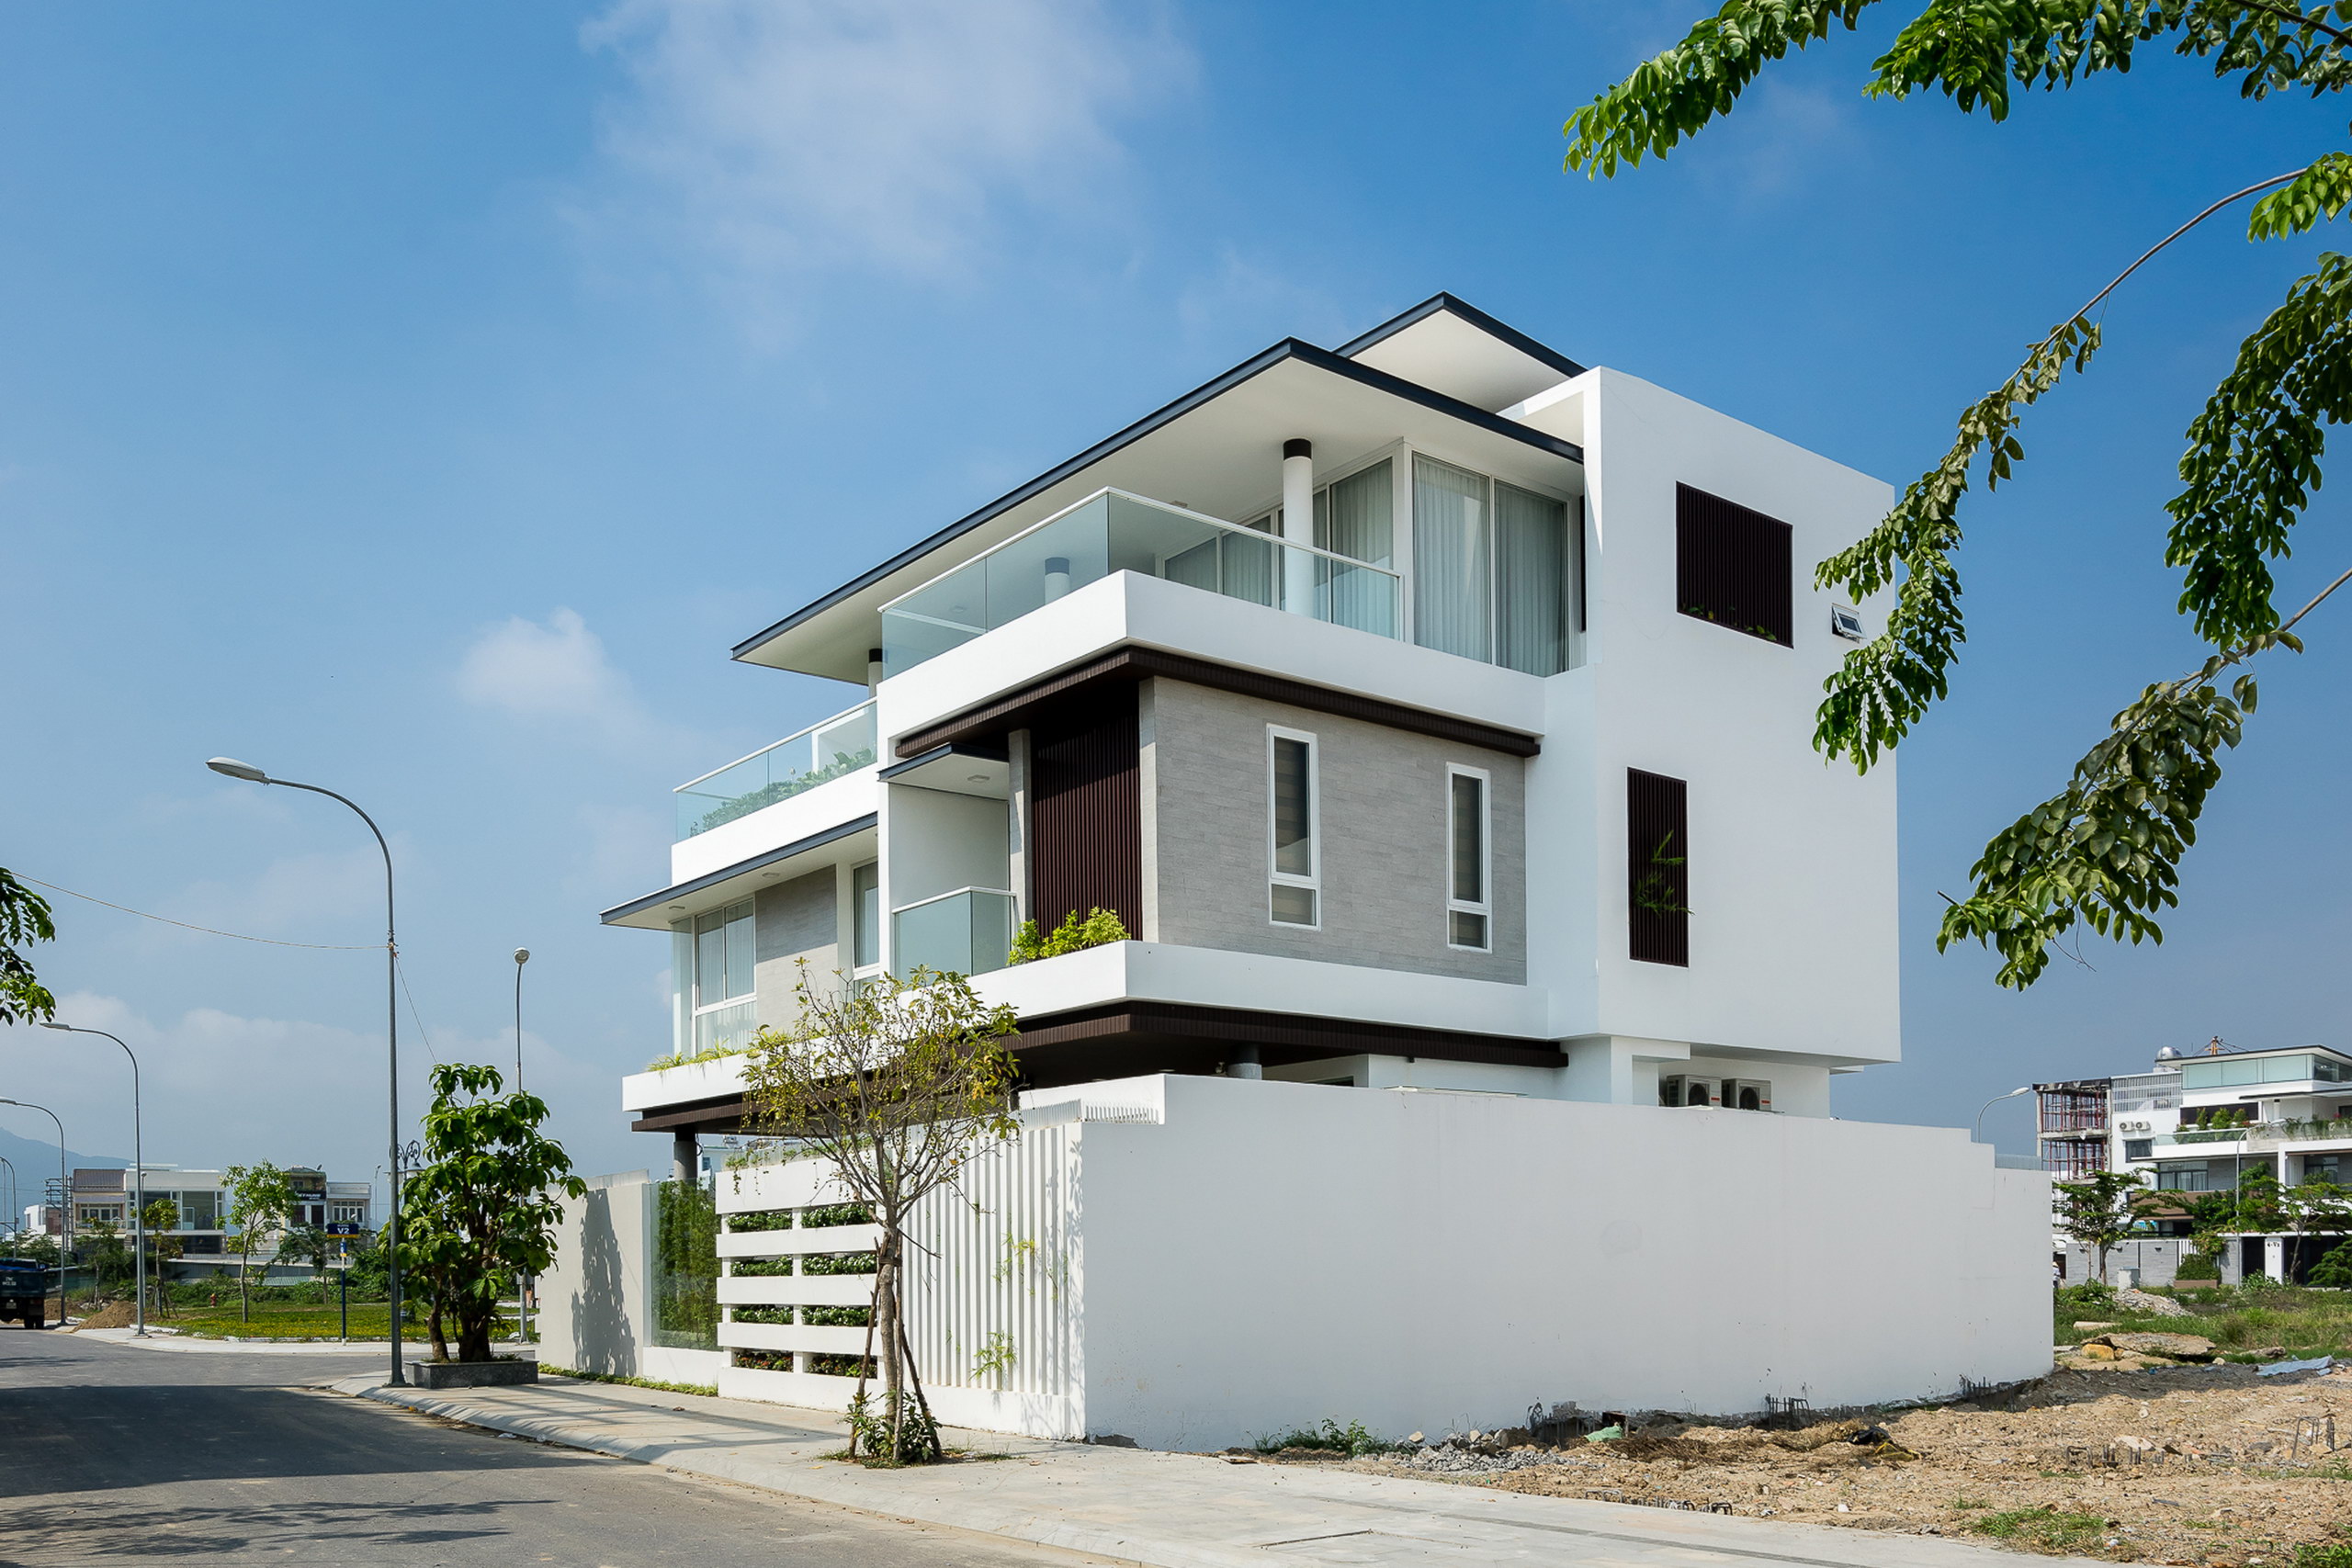 1d 3 - Biệt thự lô góc 3 tầng kiến trúc hiện đại, công trình được thiết kế tại TP biển Nha Trang